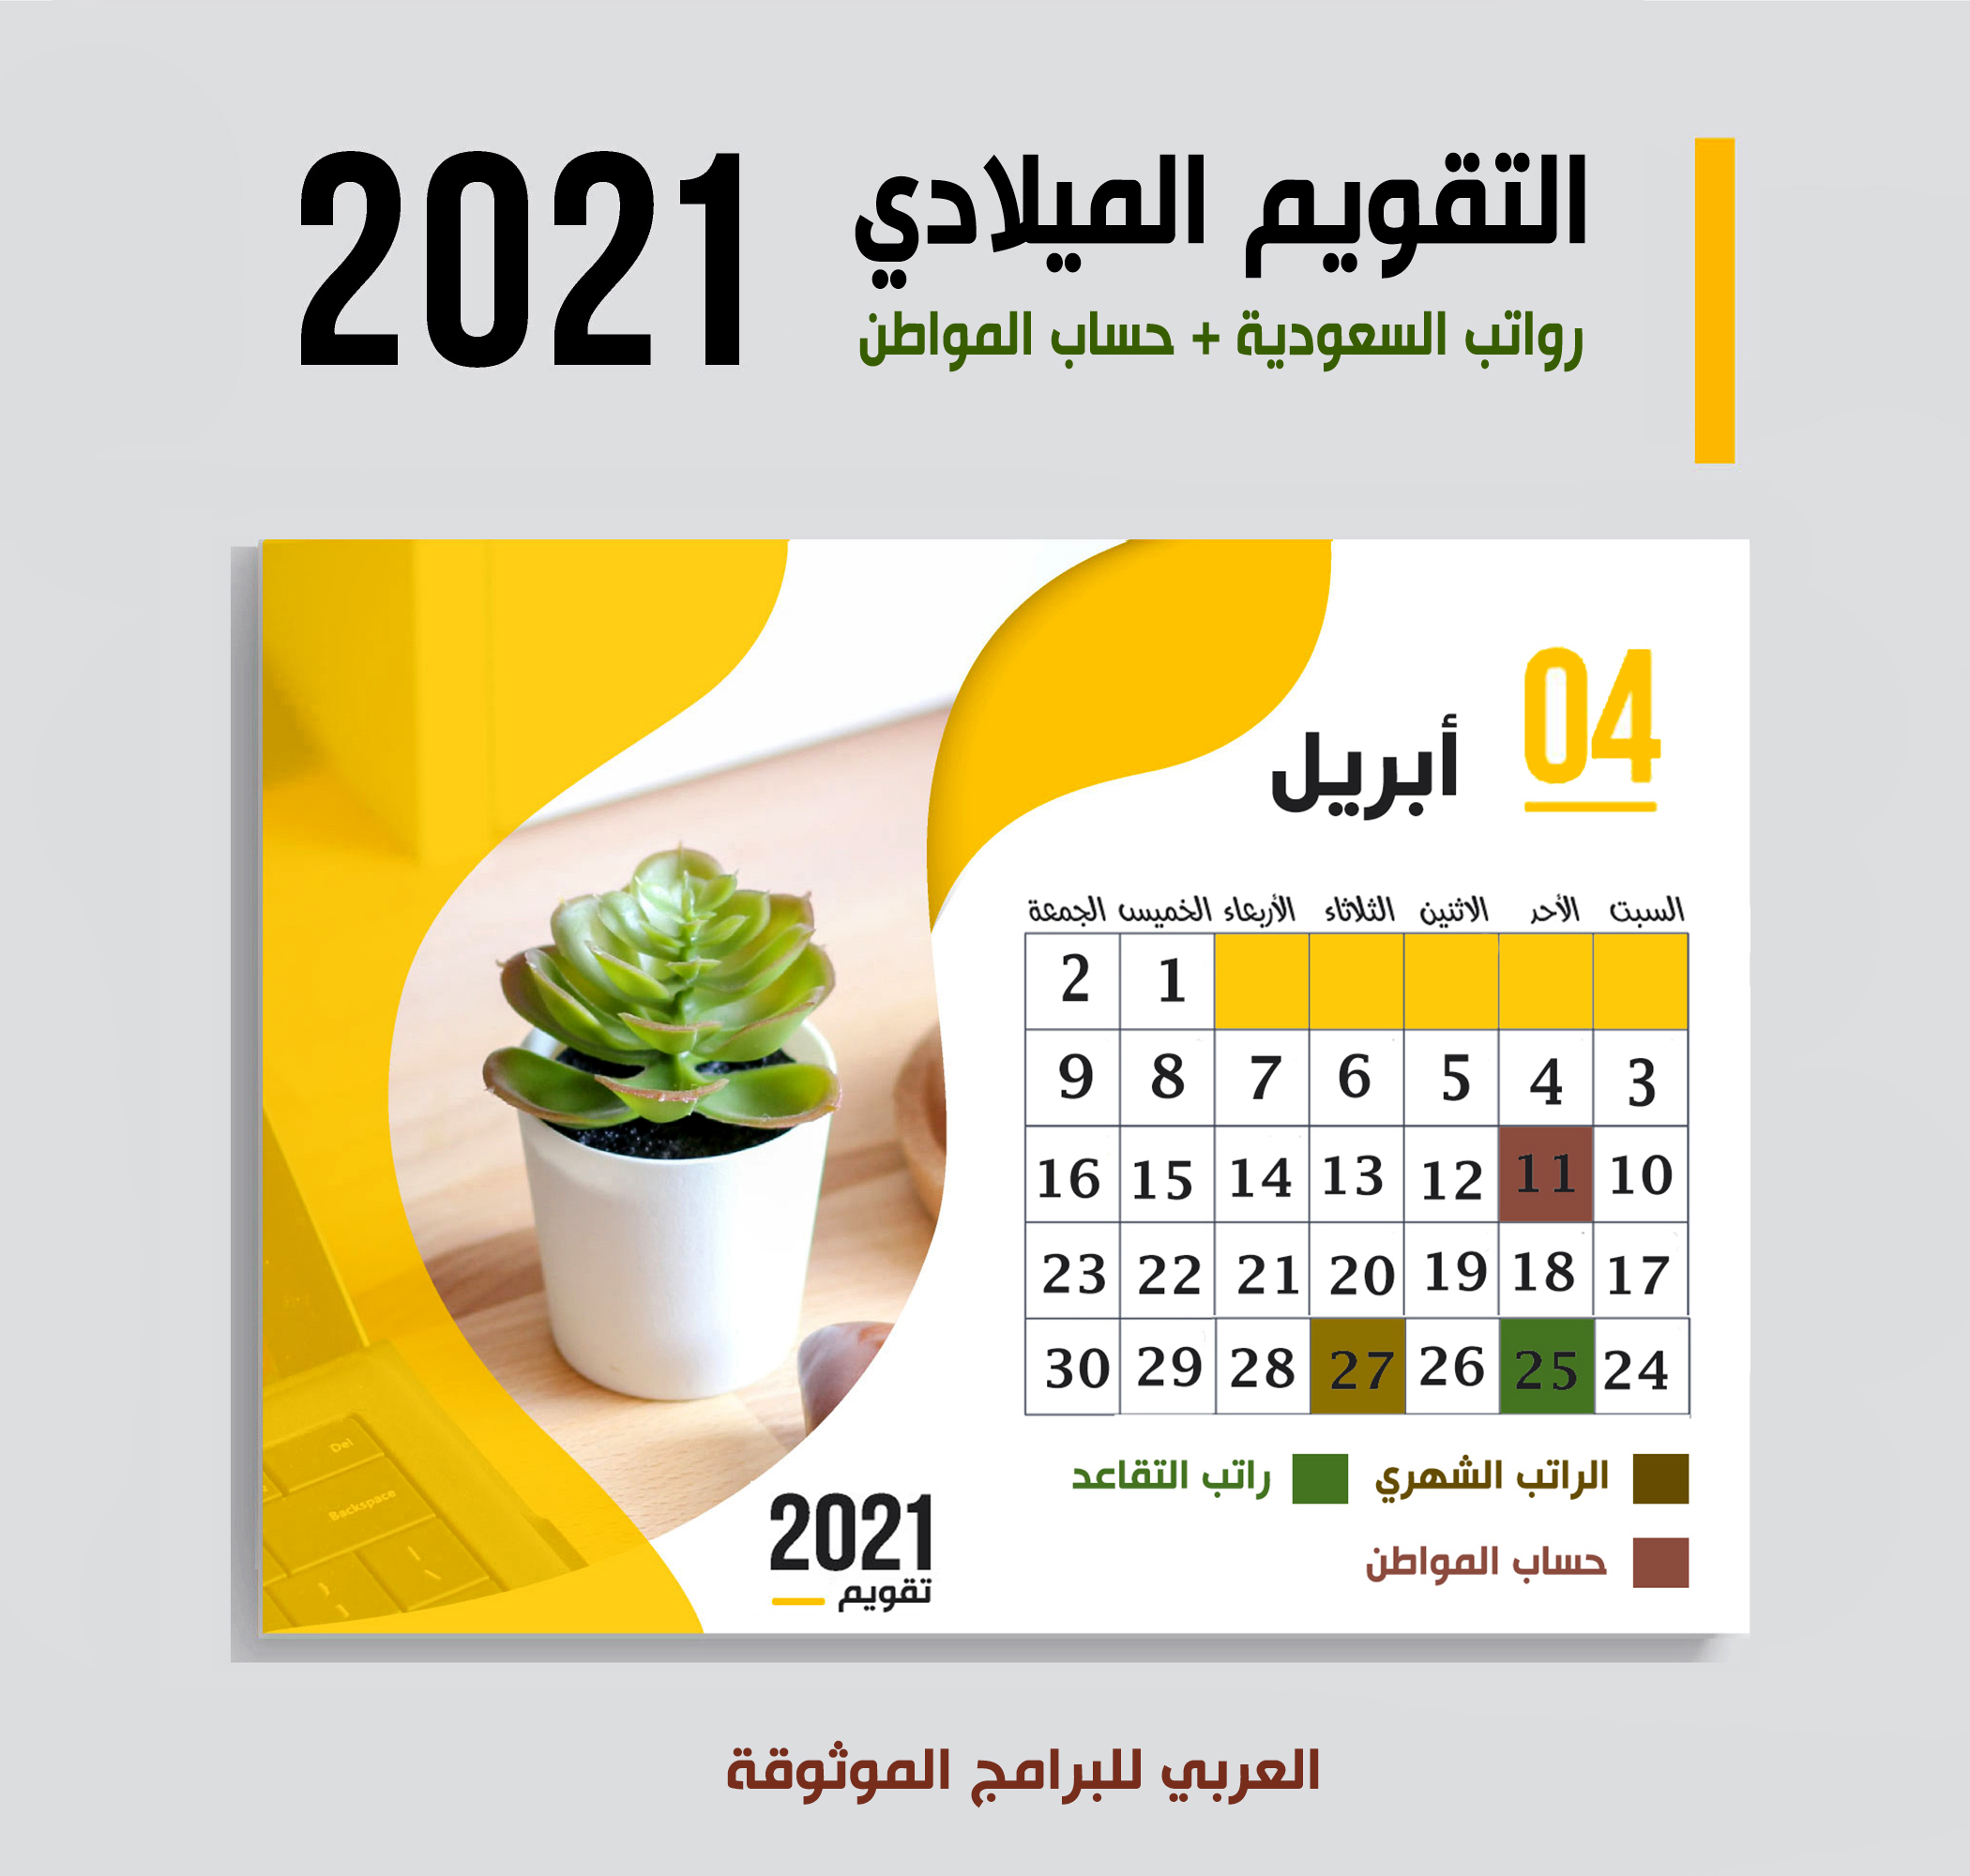 موعد صرف رواتب السعودية وحساب المواطن وصرف رواتب المتقاعدين لشهر أبريل 2021